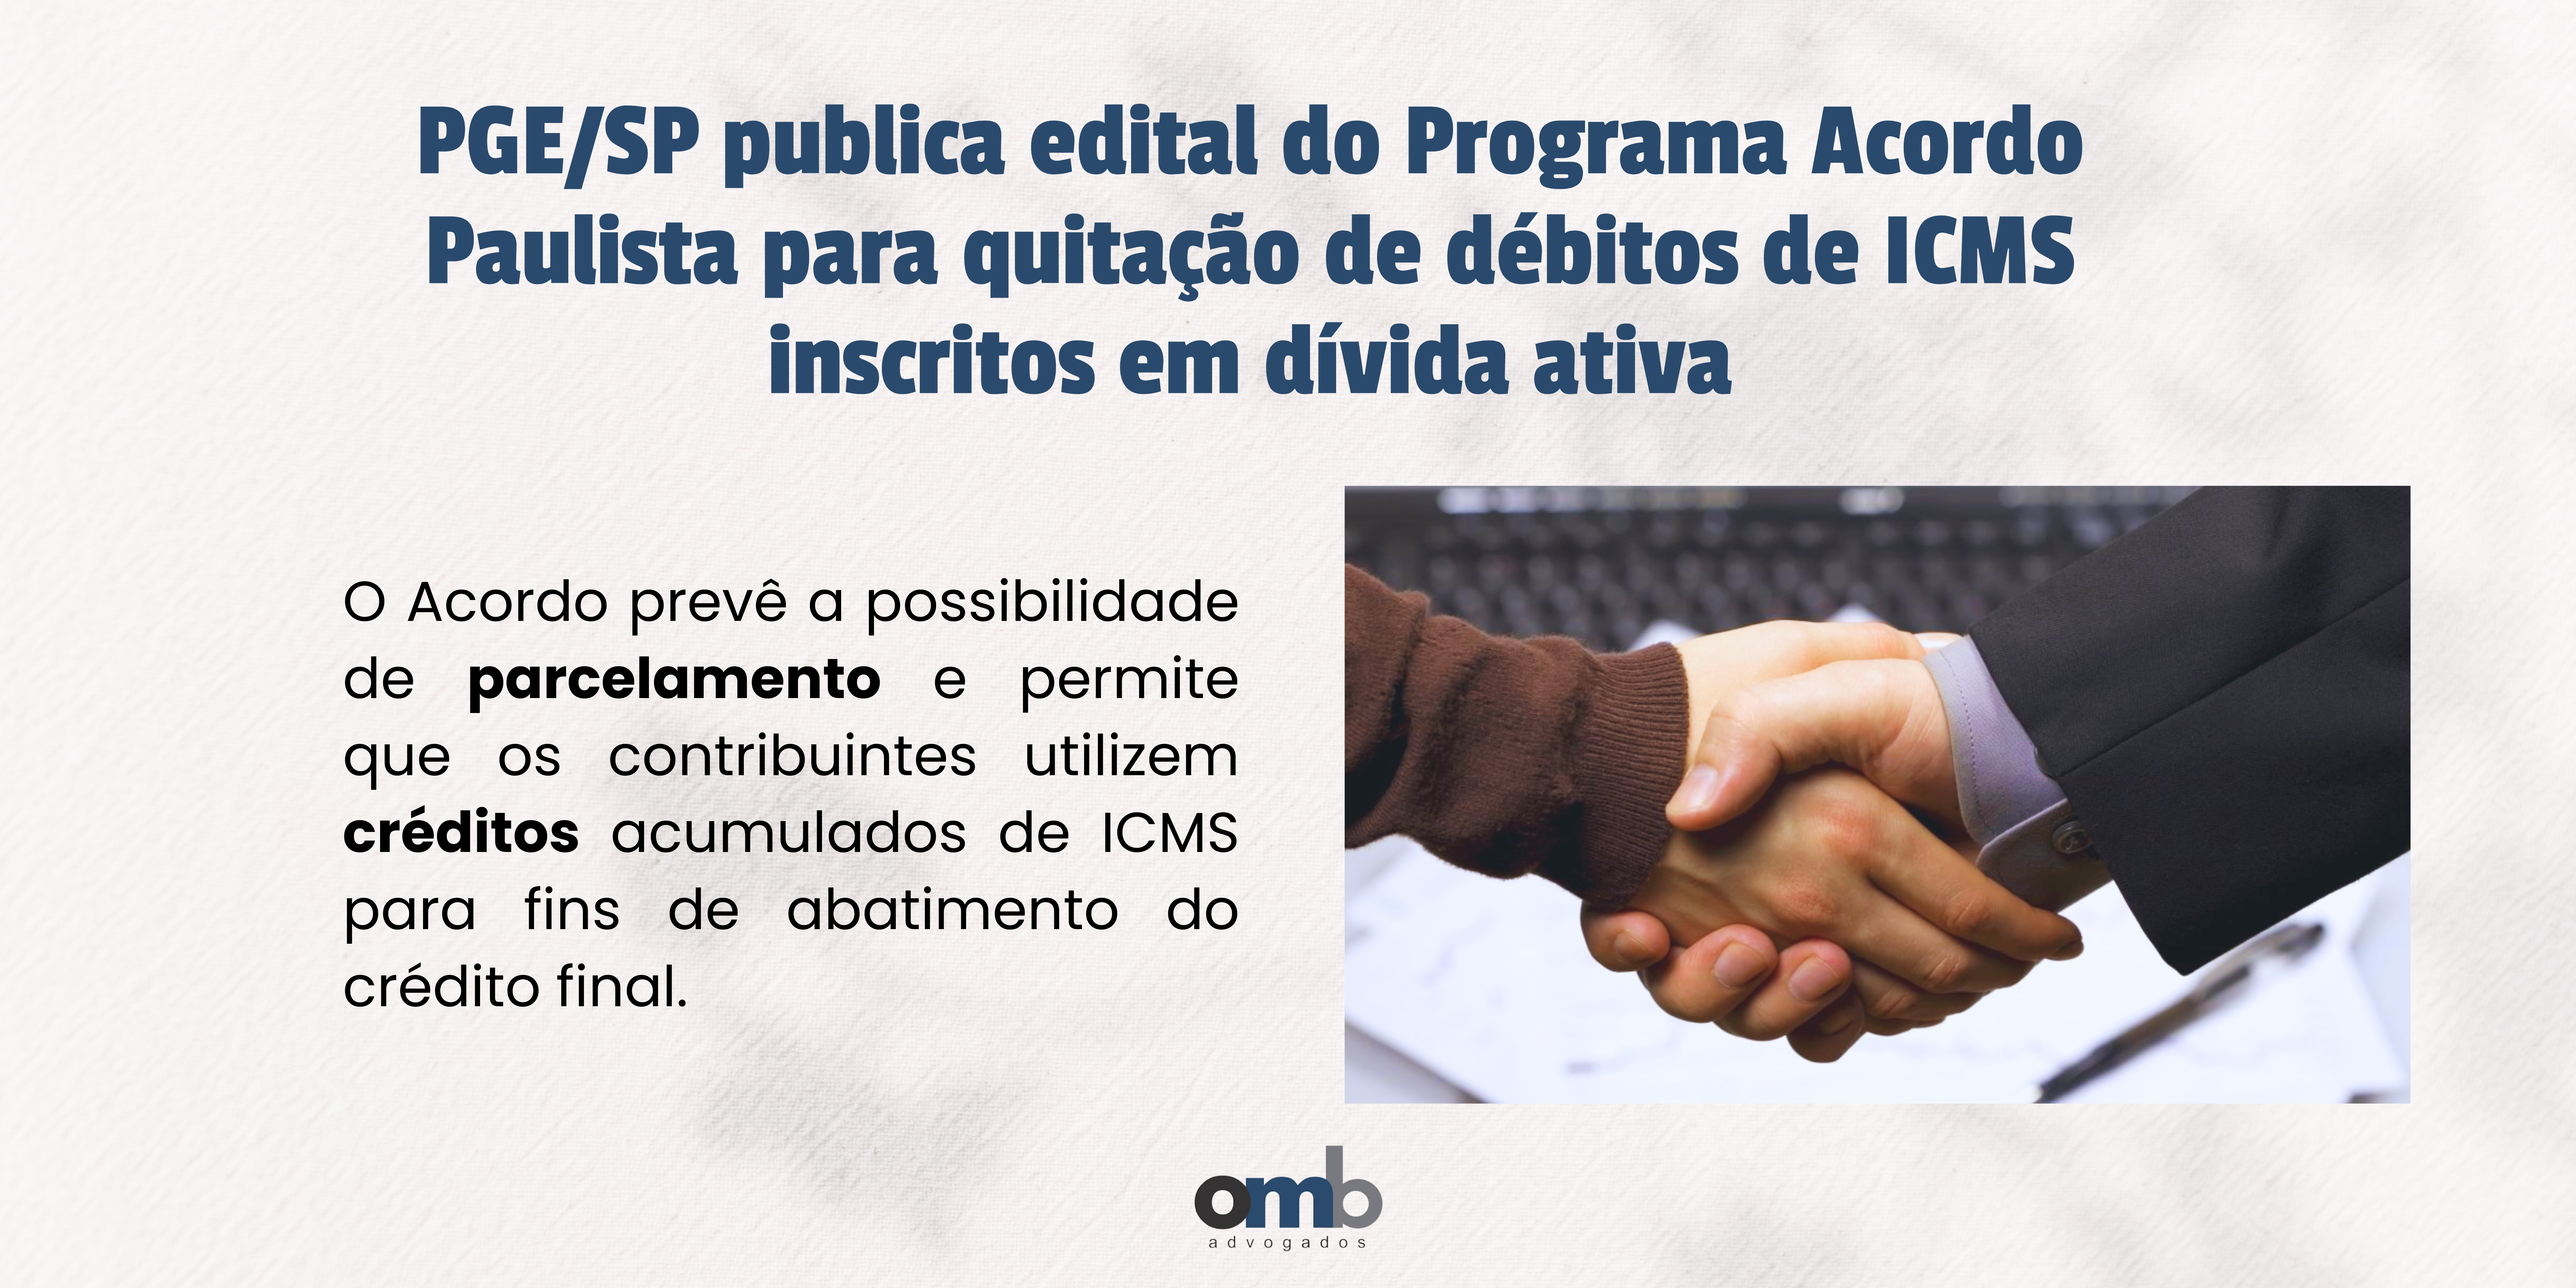 PGE/SP publica edital do Programa Acordo Paulista para quitação de débitos de ICMS inscritos em dívida ativa